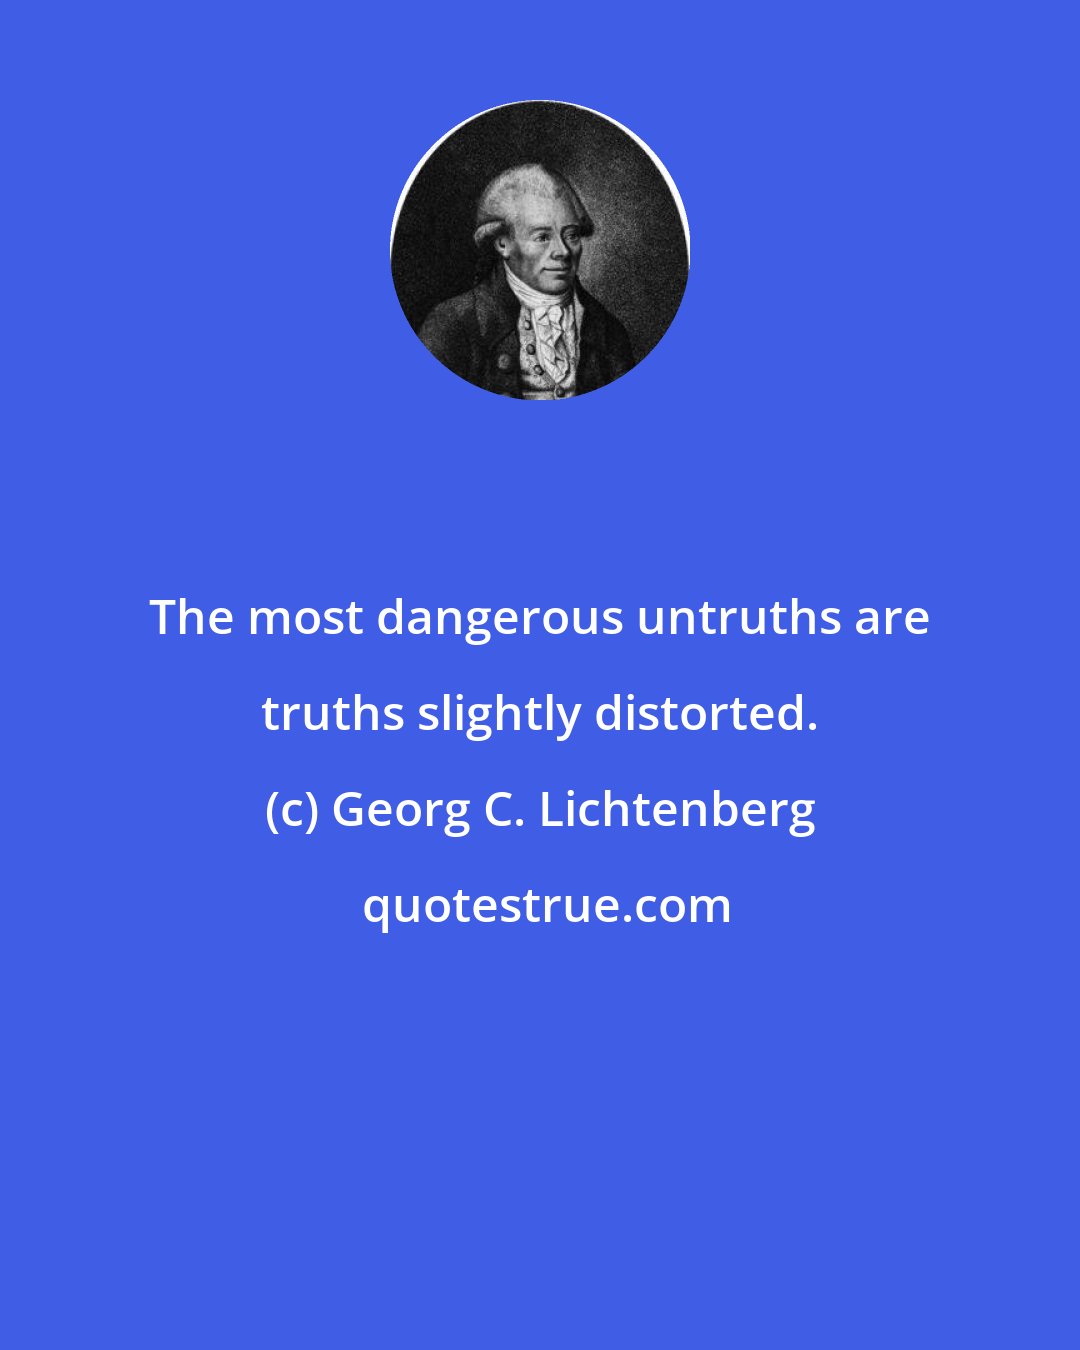 Georg C. Lichtenberg: The most dangerous untruths are truths slightly distorted.